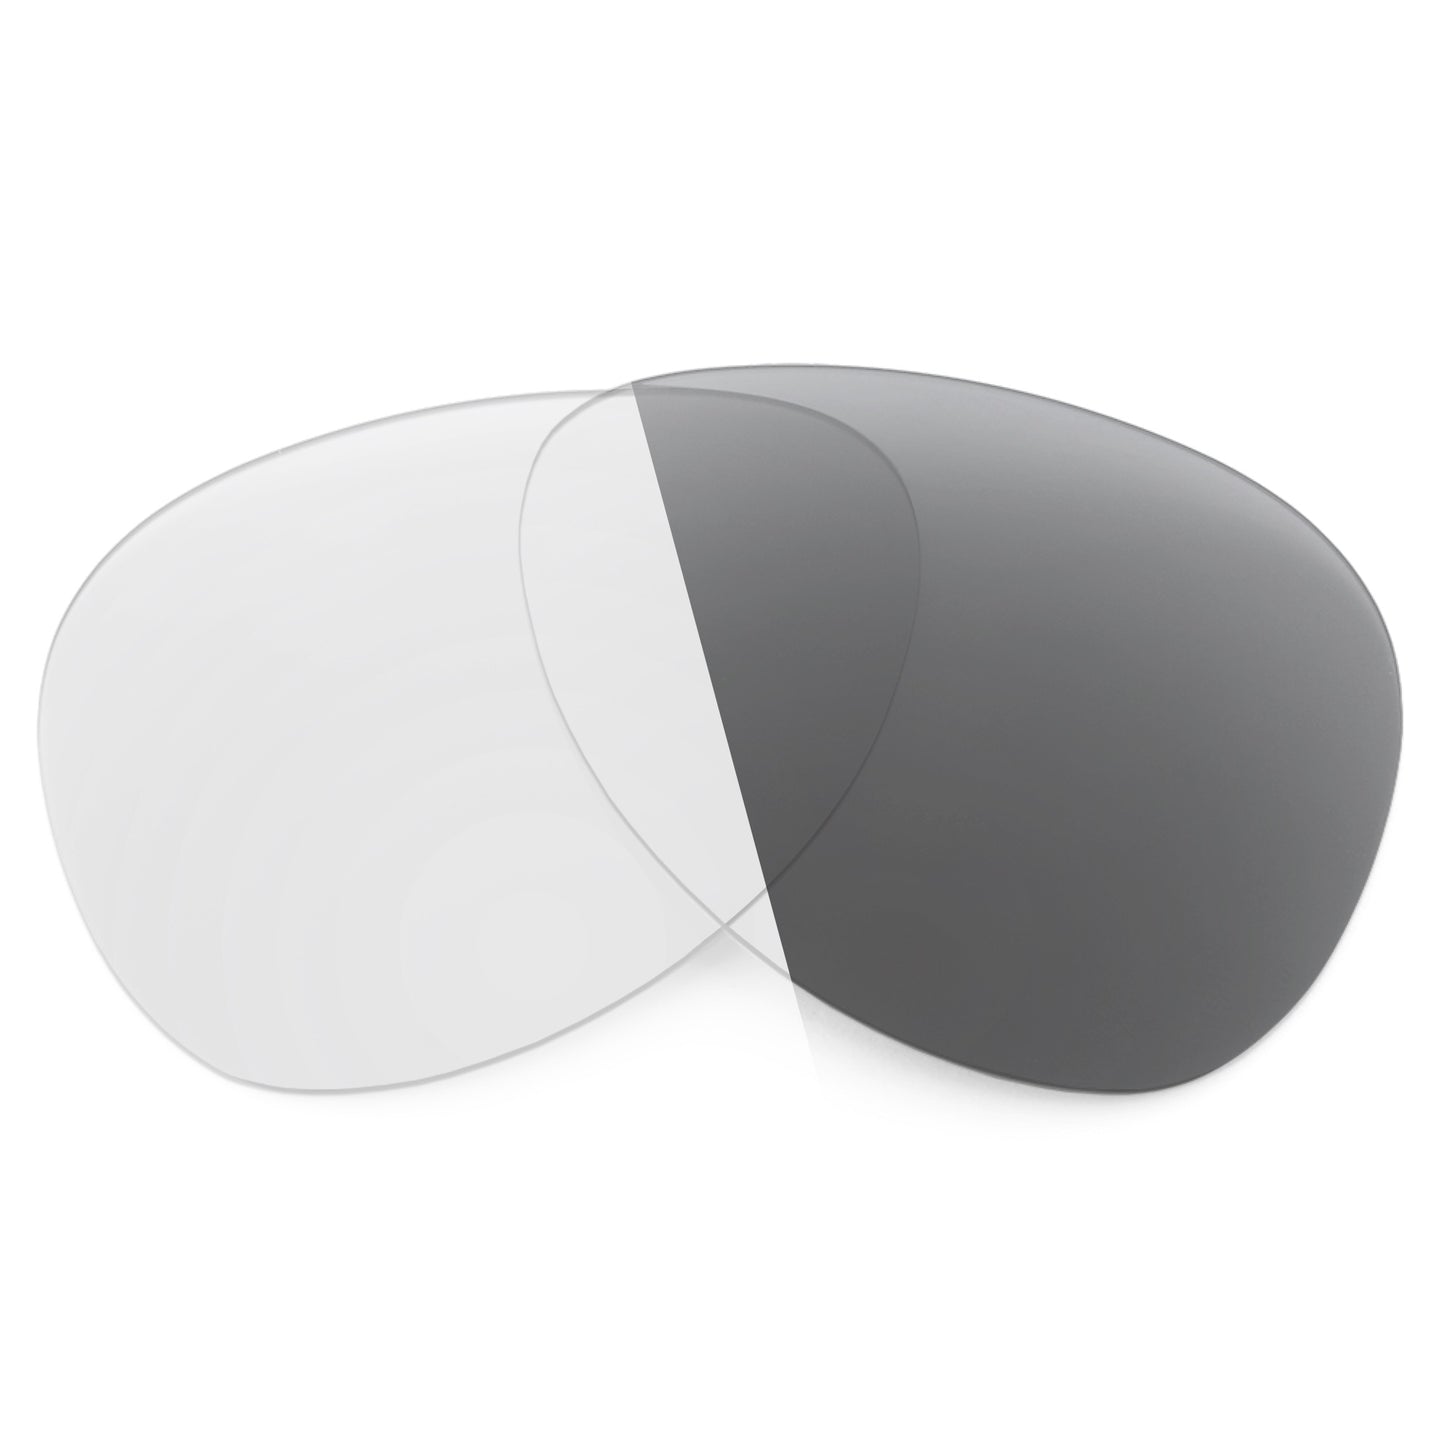 Revant replacement lenses for Electric AV1 Non-Polarized Adapt Gray Photochromic